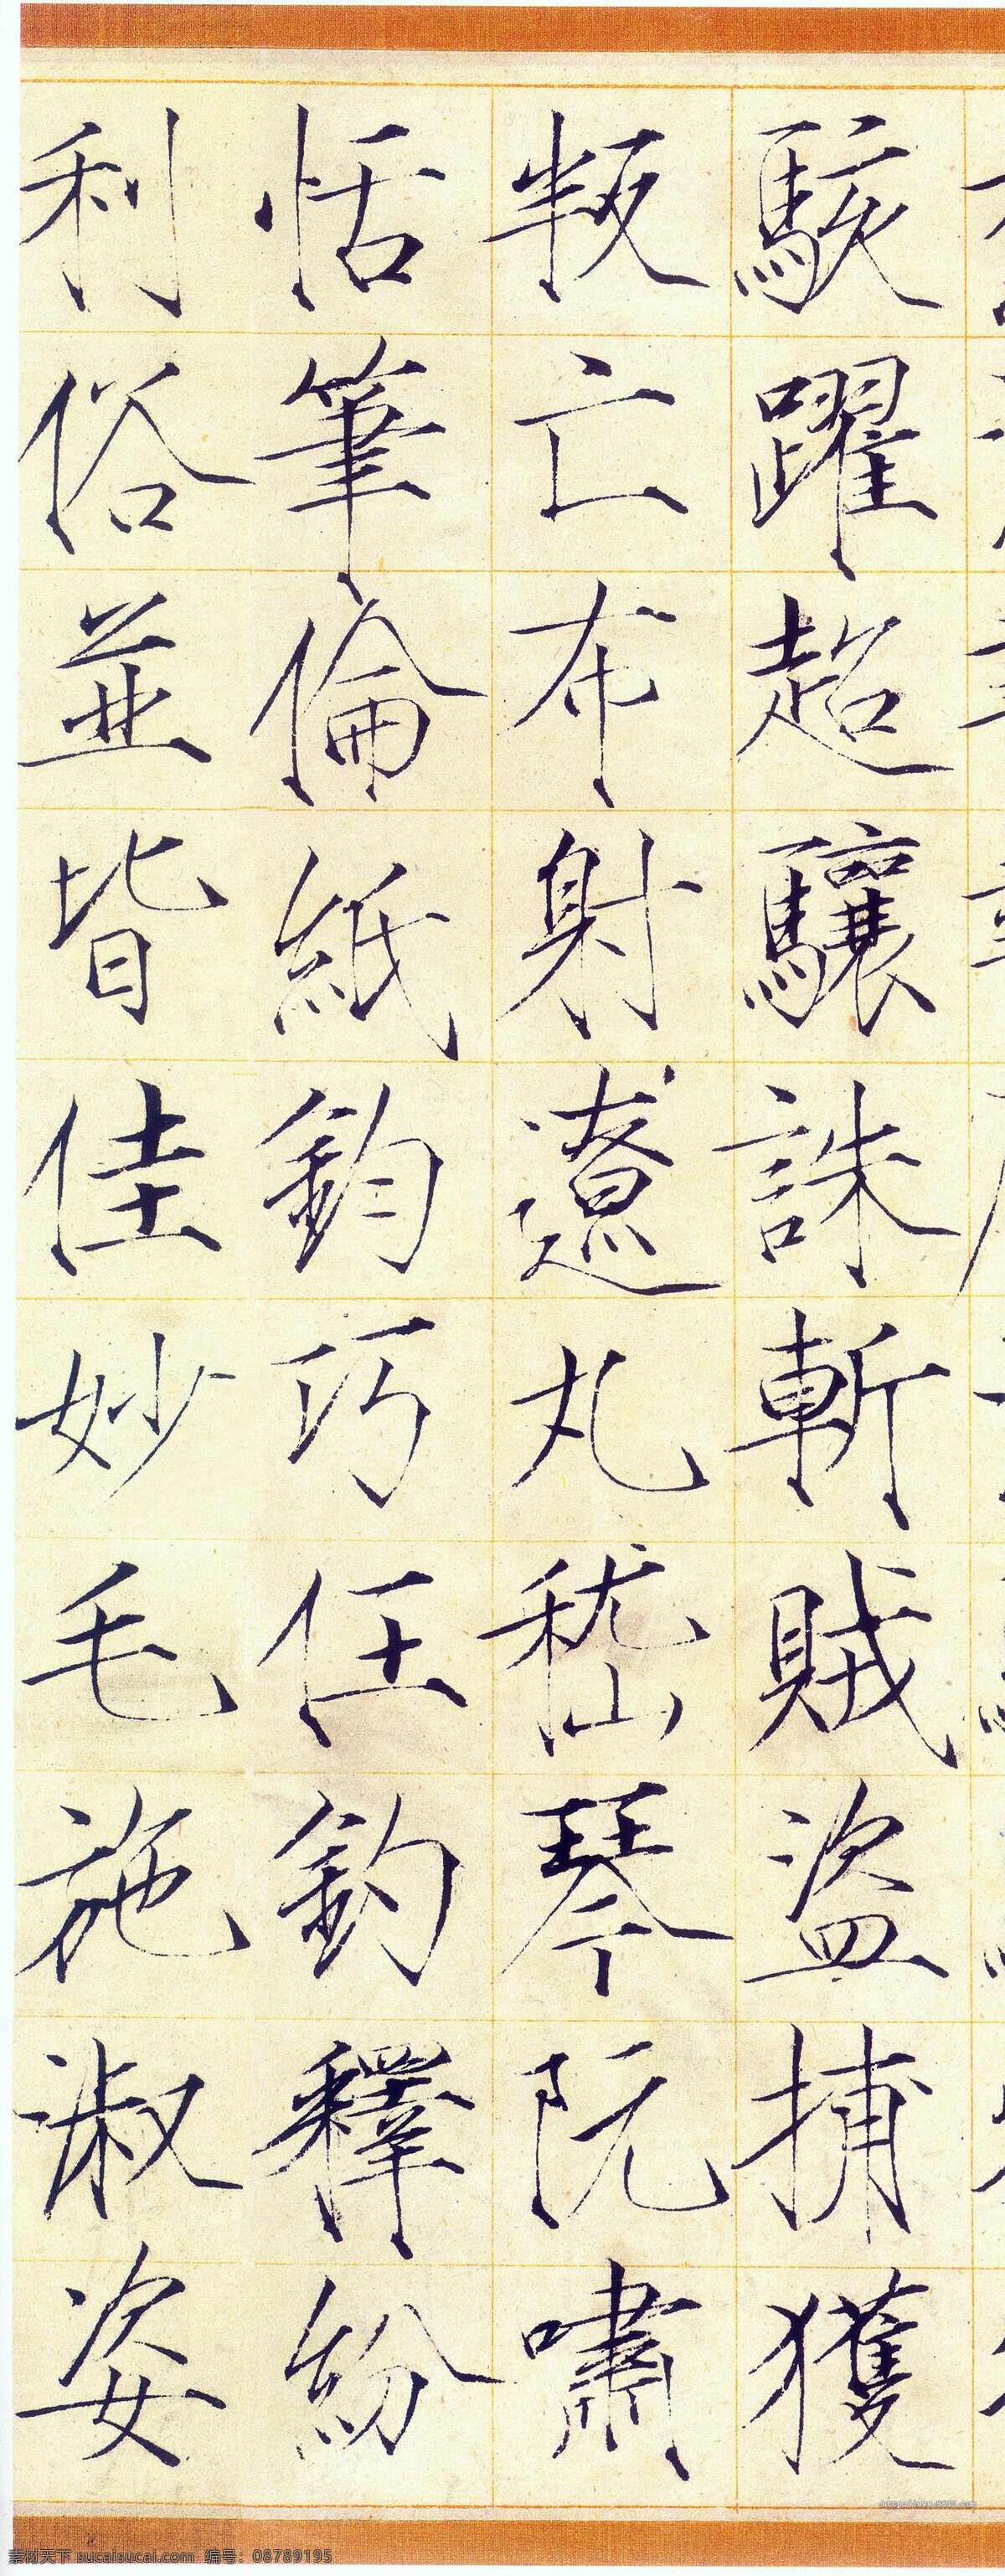 千字文 宋徽宗 古典 传统文化 宋朝 文化艺术 绘画书法